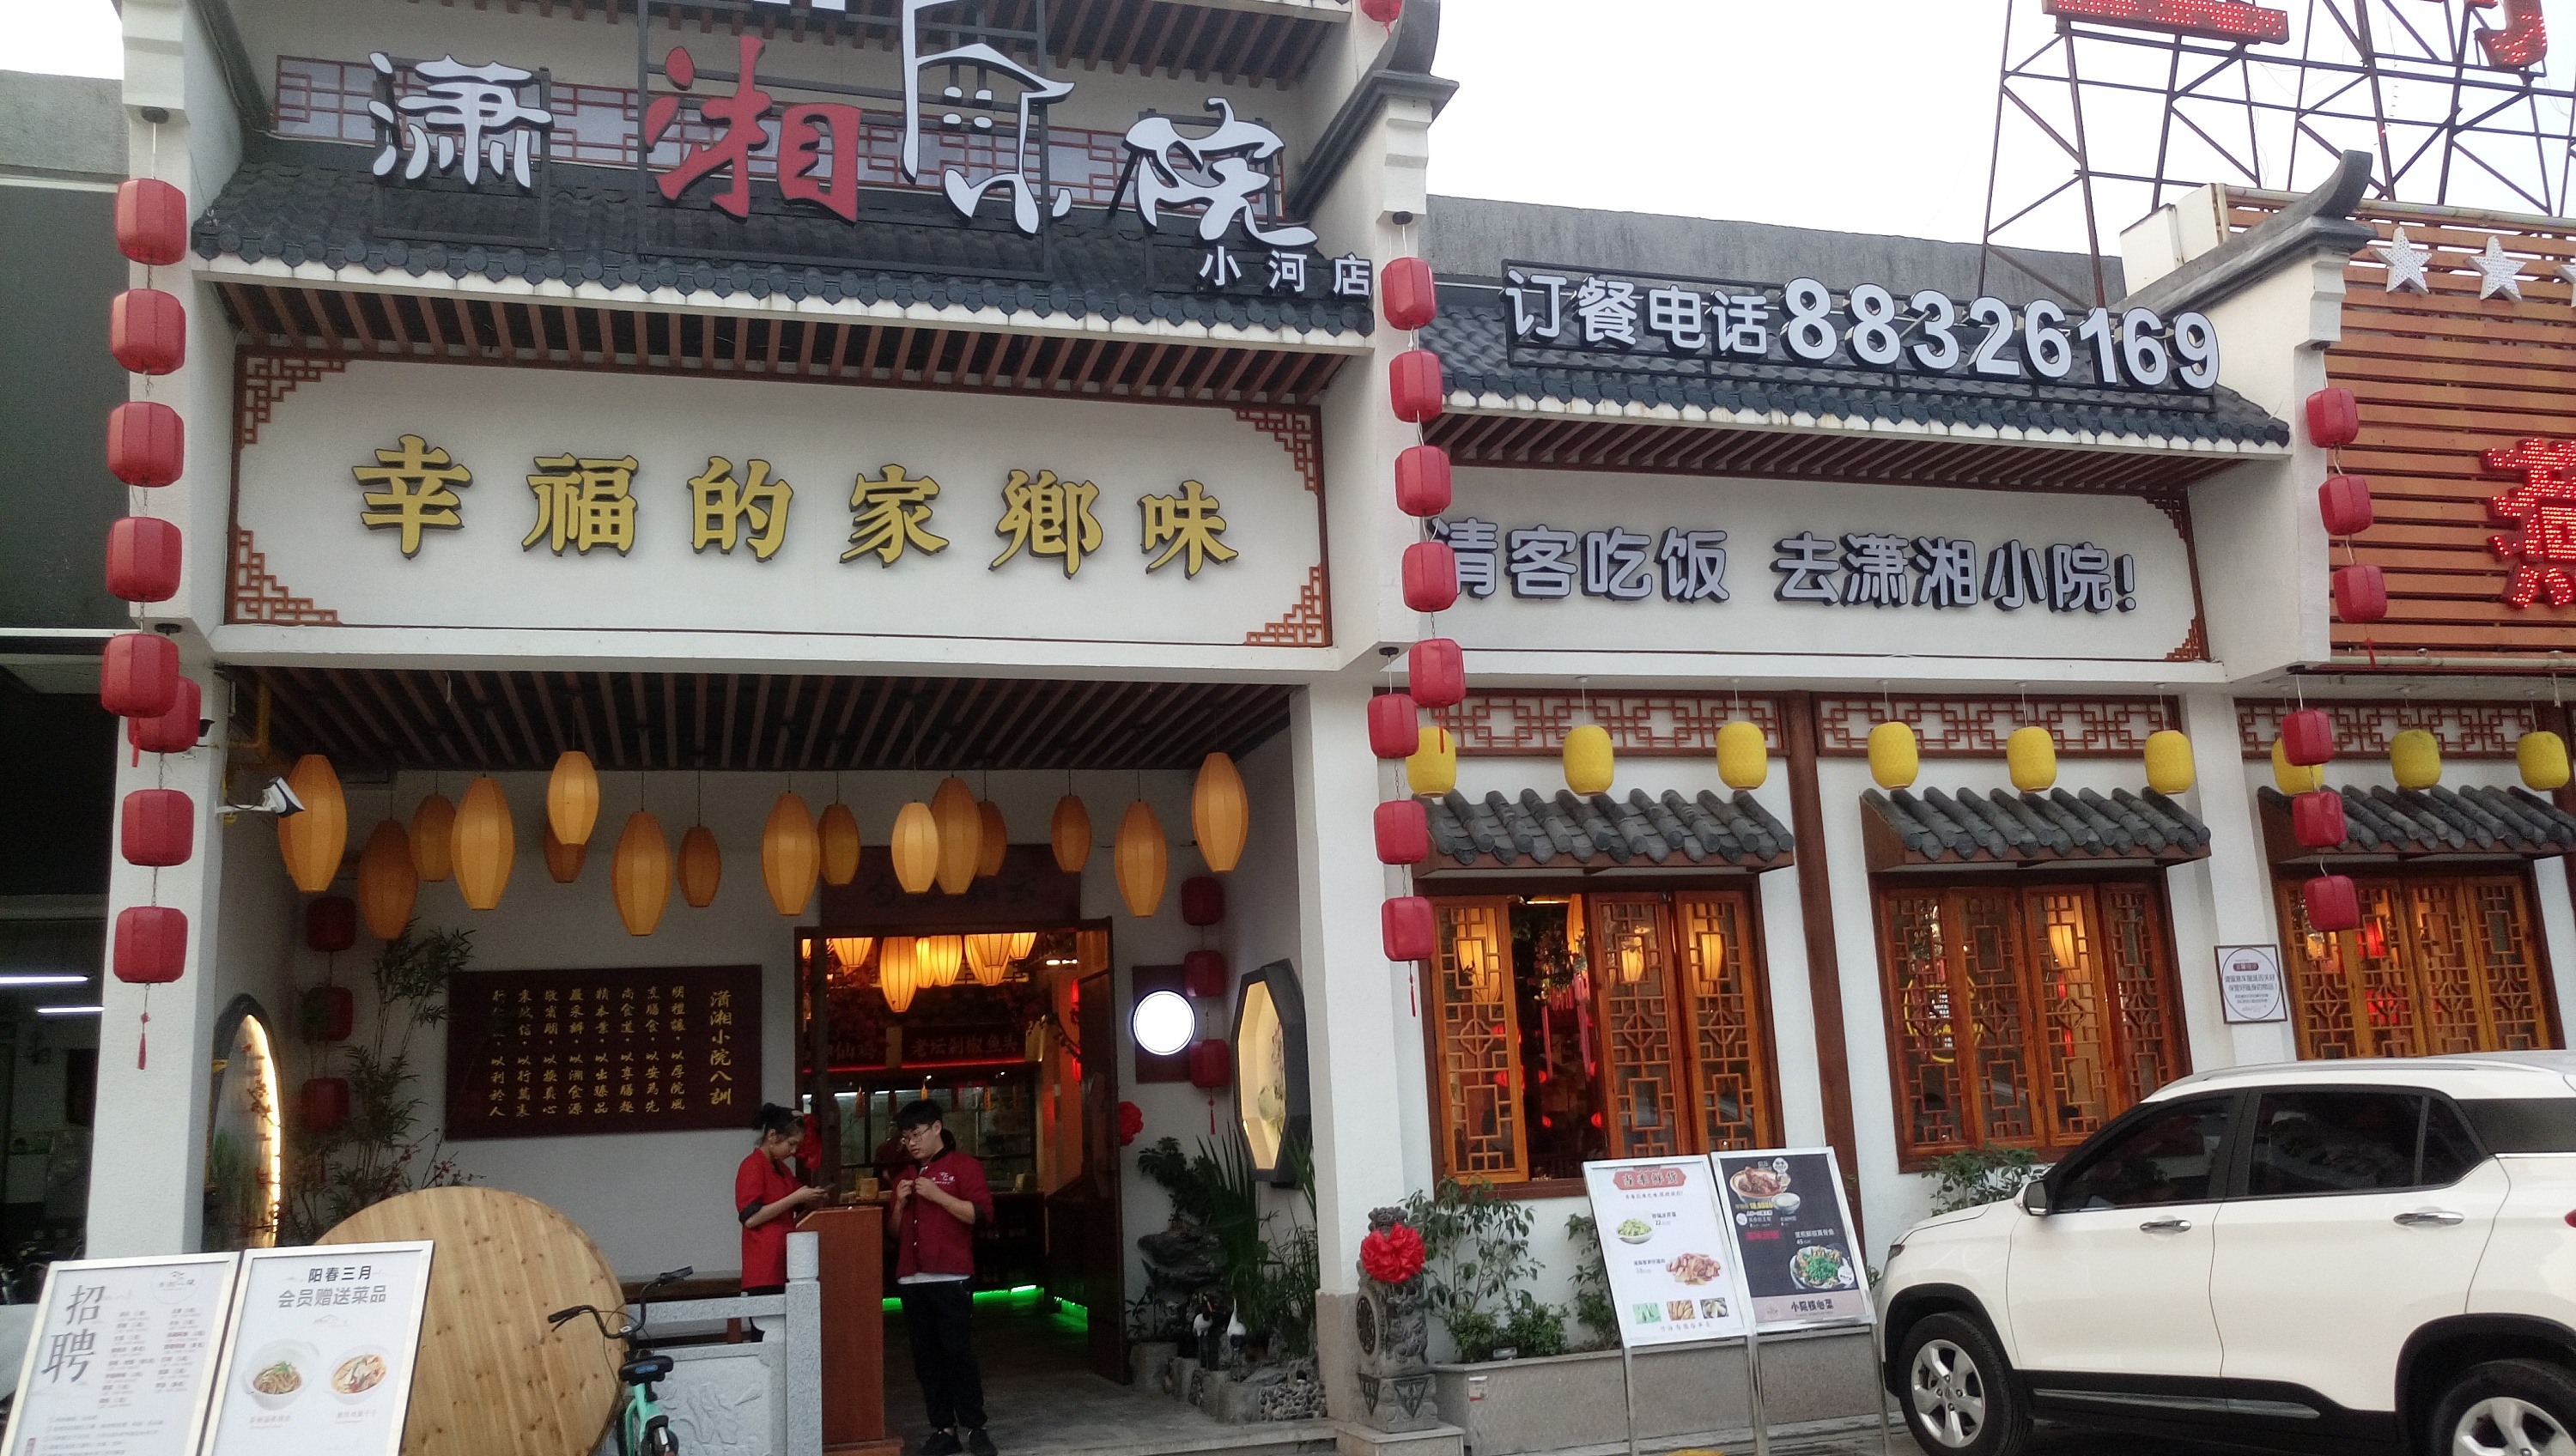 中式餐厅 东莞潇湘小院湘菜主题餐厅软装设计